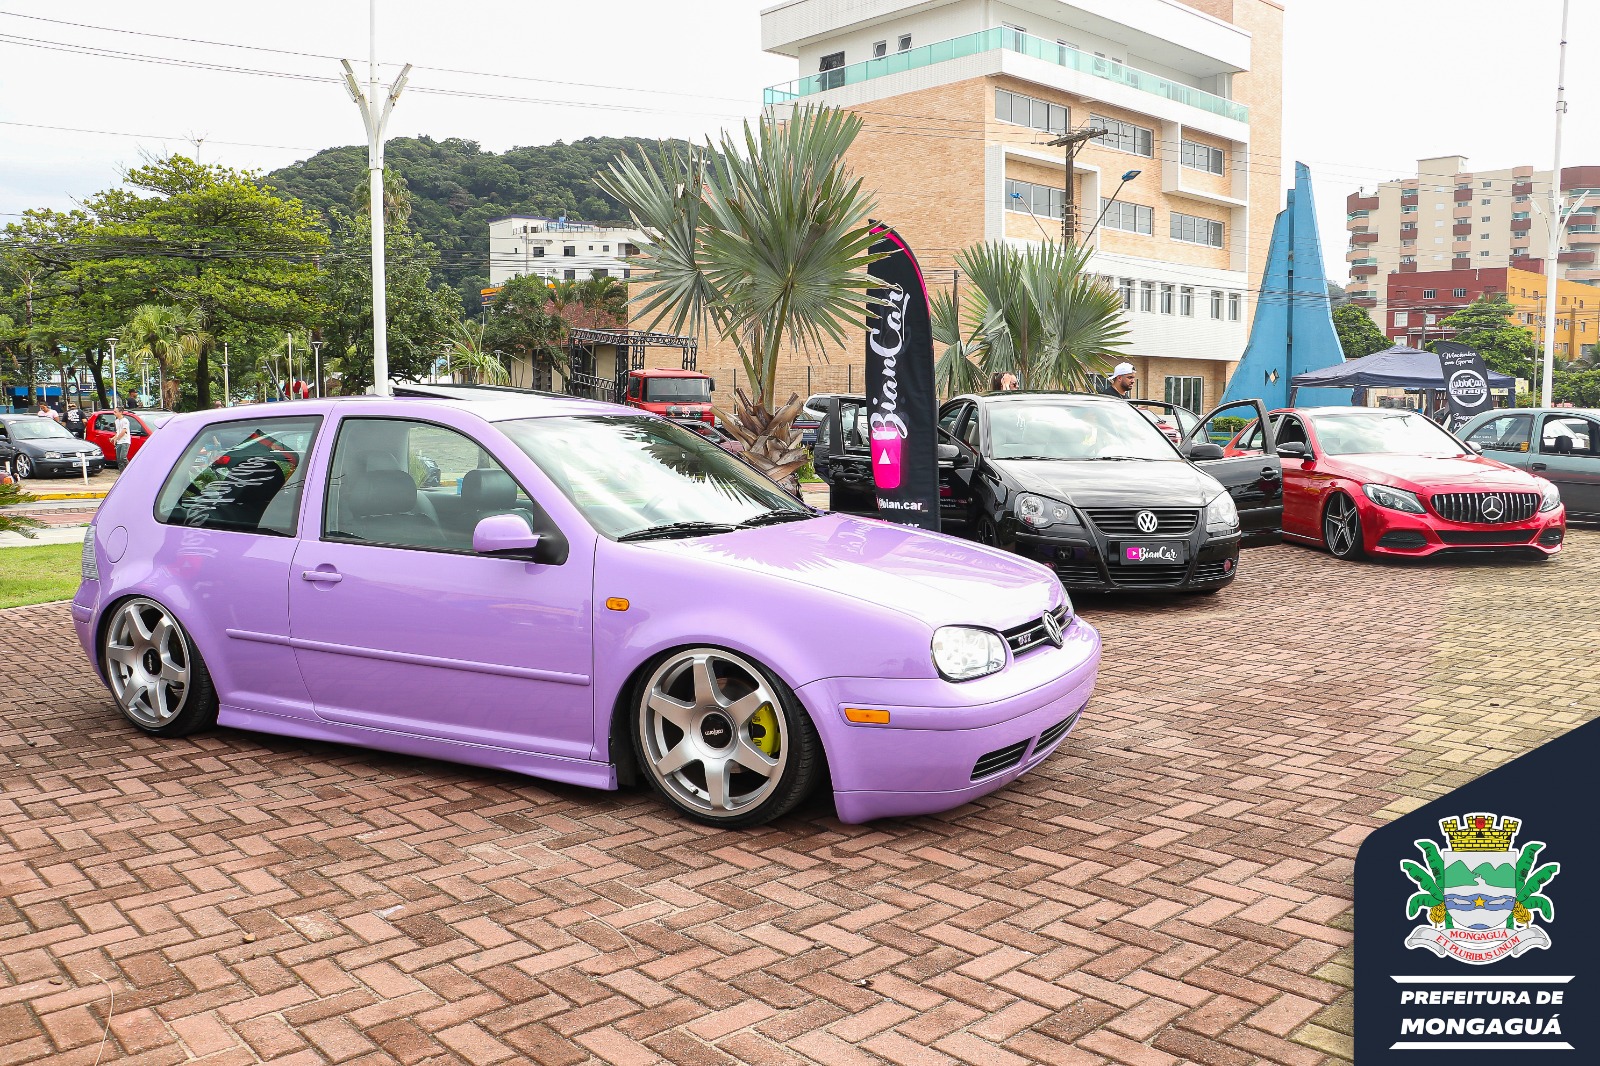 Encontro reúne apaixonados por carros rebaixados em Cajamar – Notícias